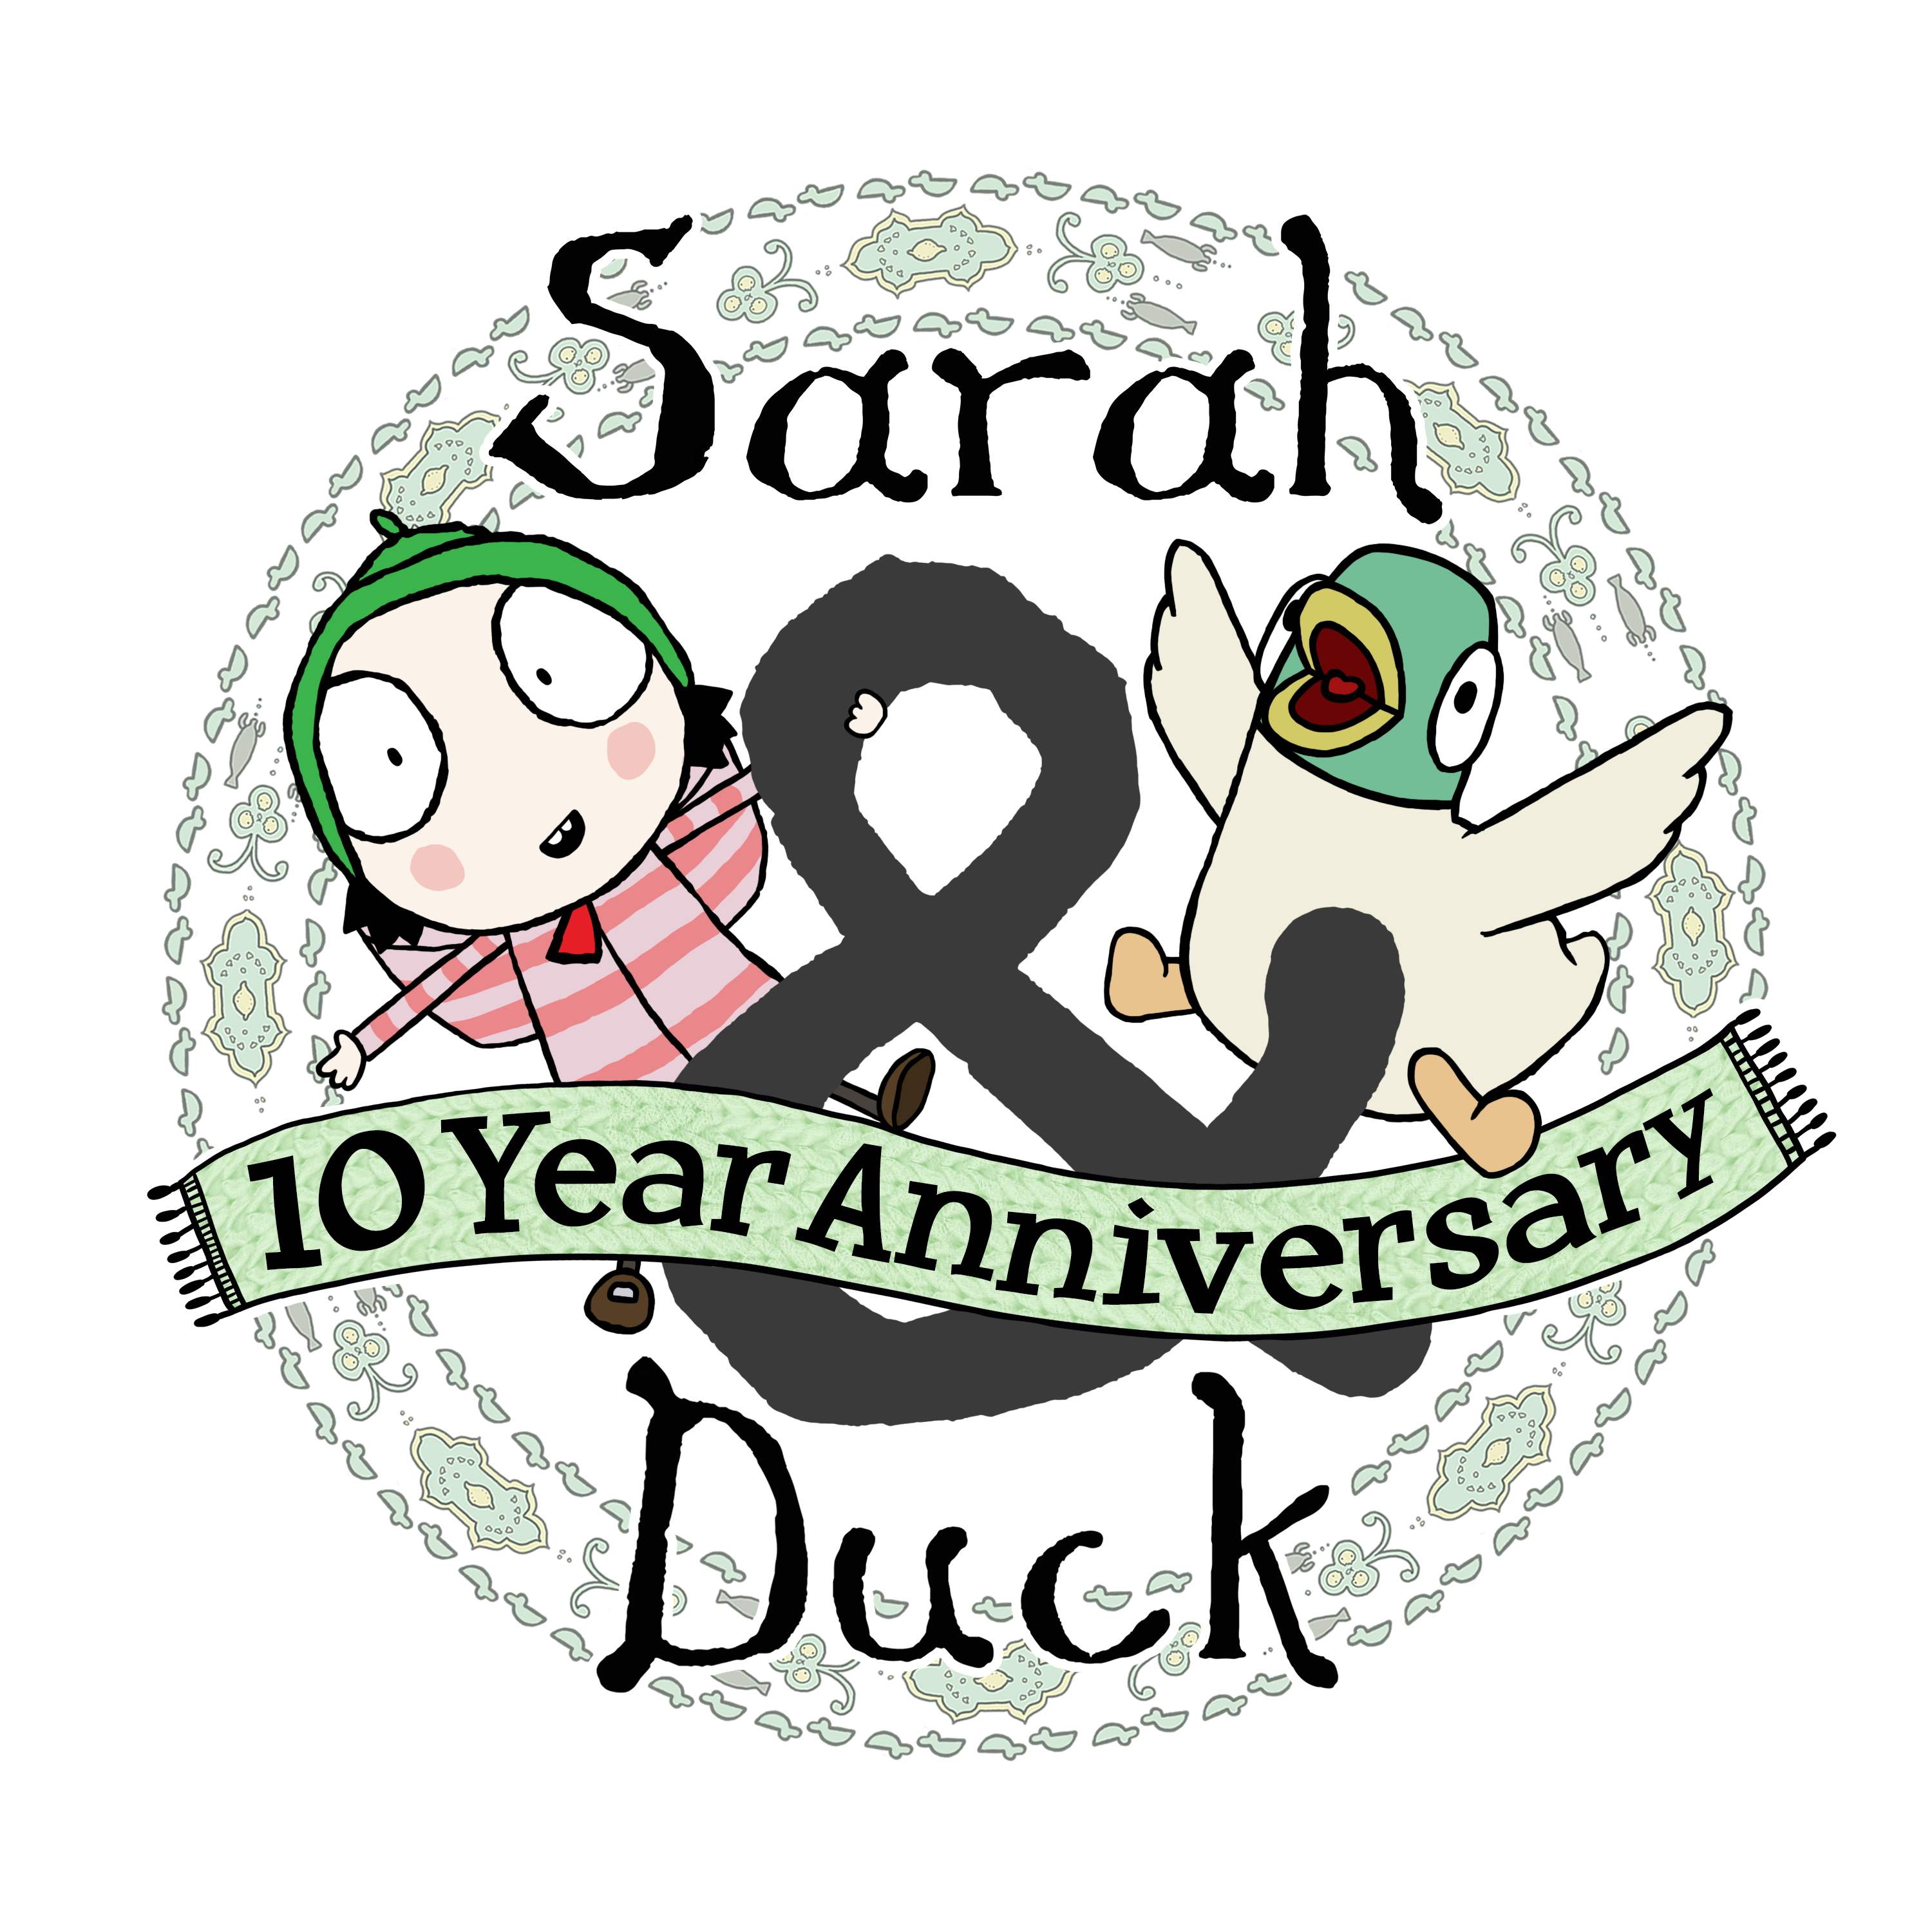 Sarah & Duck